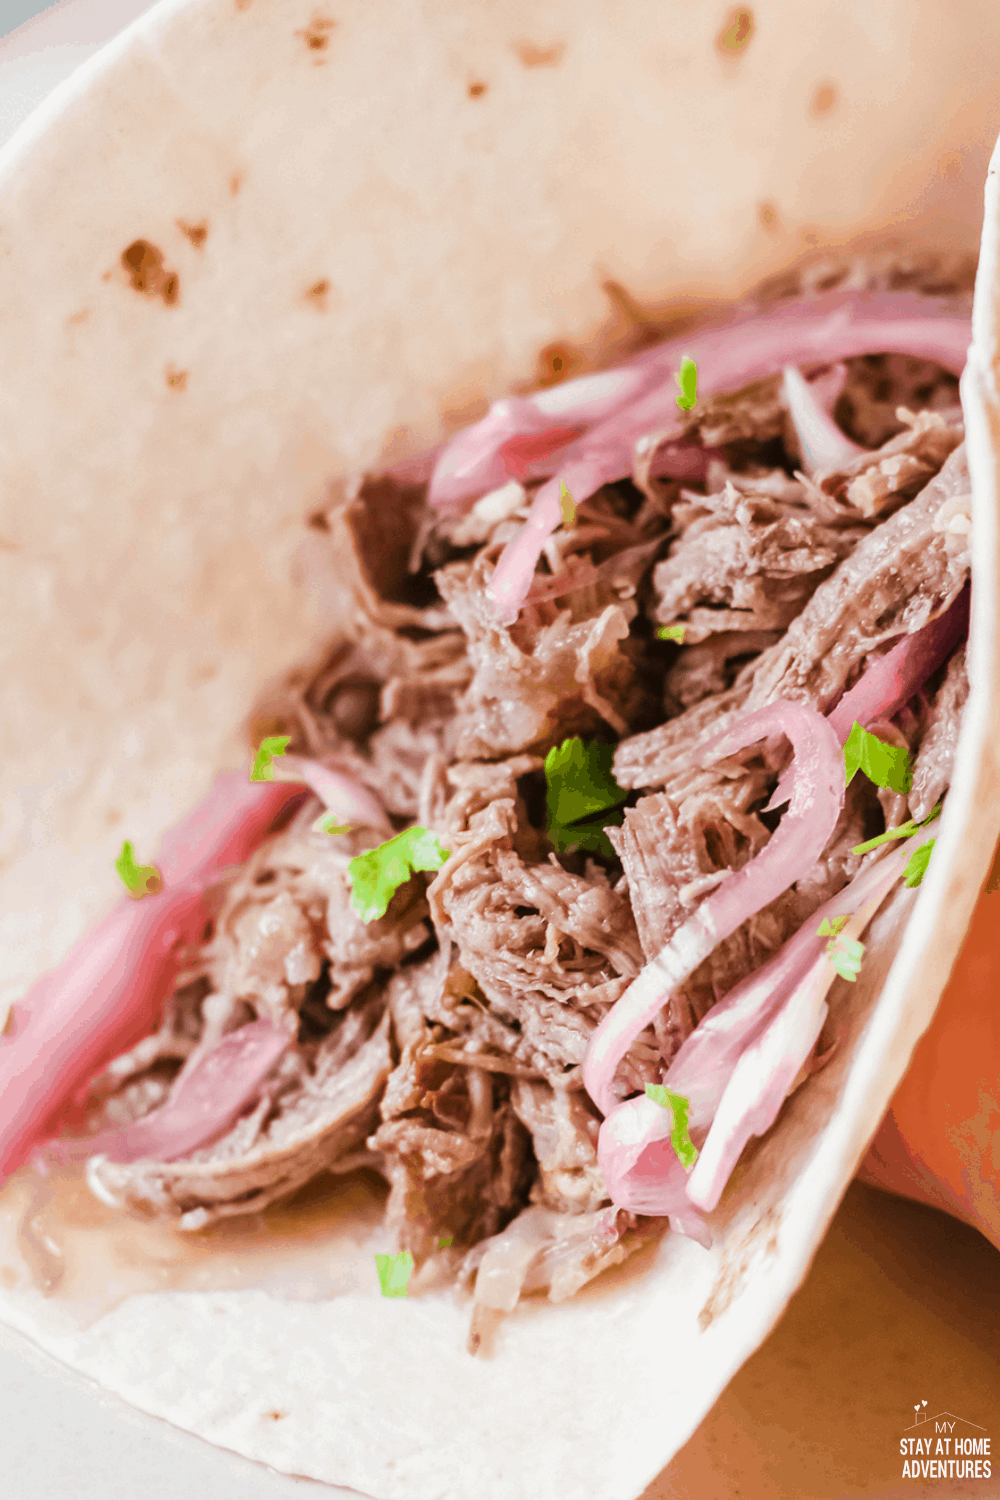 Shredded beef Taco ' s (taco 's De Carne Deshebrada) zijn mals, smaakvol, verbazingwekkende taco' s waar je familie keer op keer om zal vragen. # tacos #tacosdeshebrada #shreddedbeeftacos # tacotuesday via @mystayathome